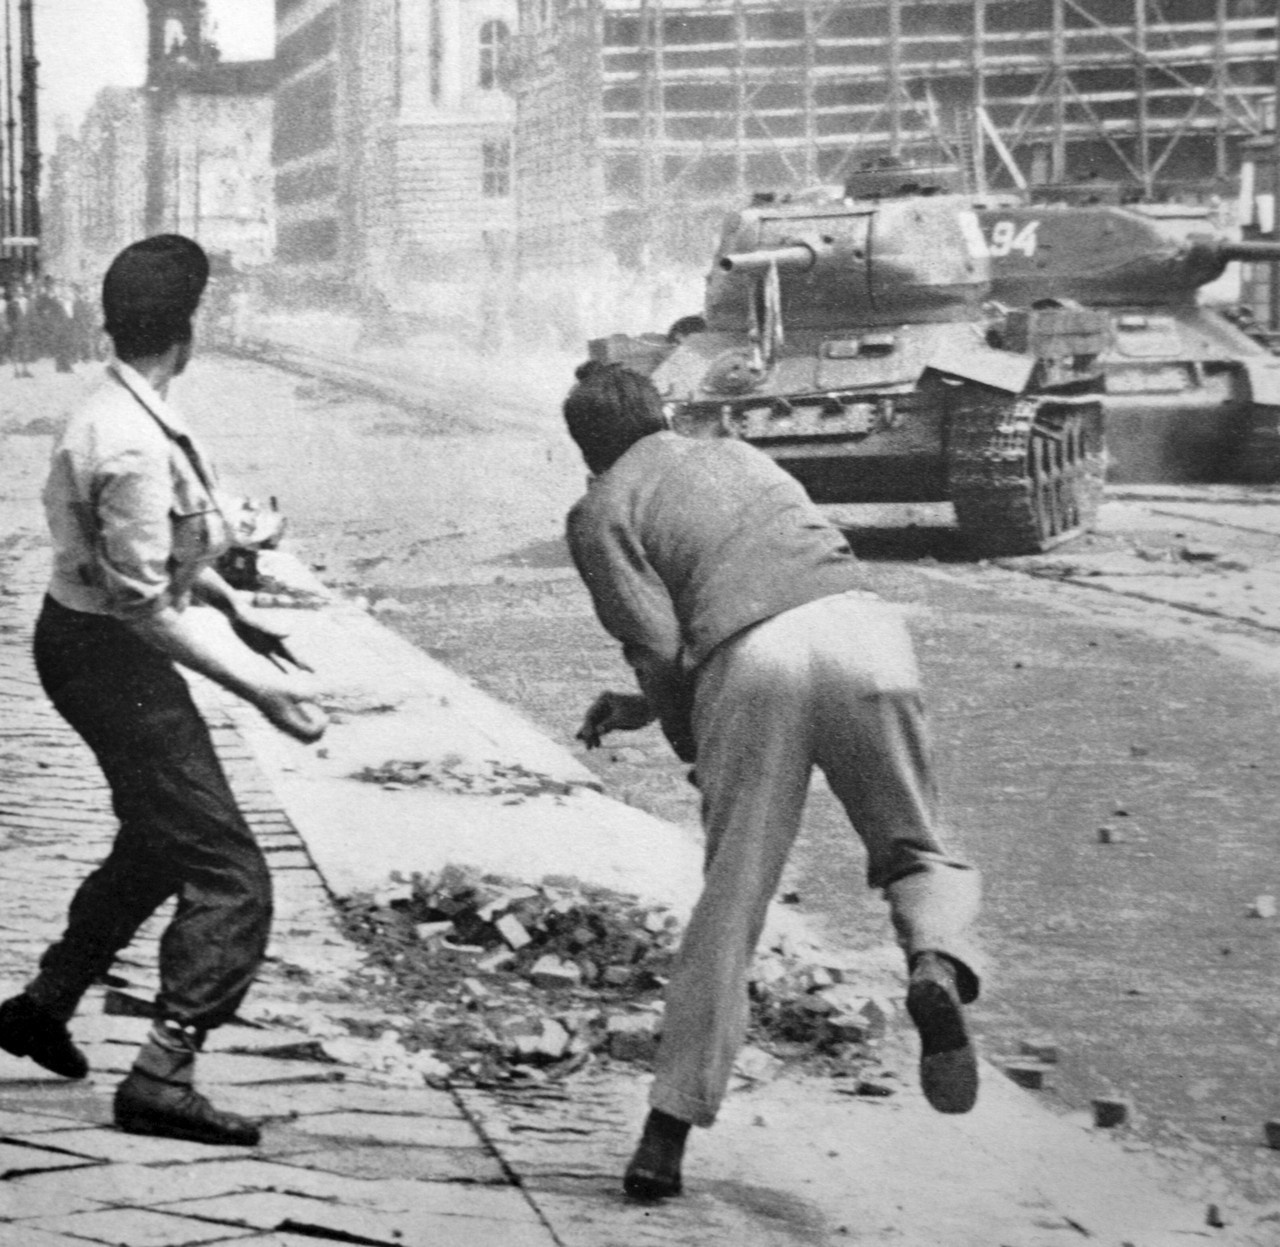 Камни против танков. Восстание 1953 года в Восточной Германии.